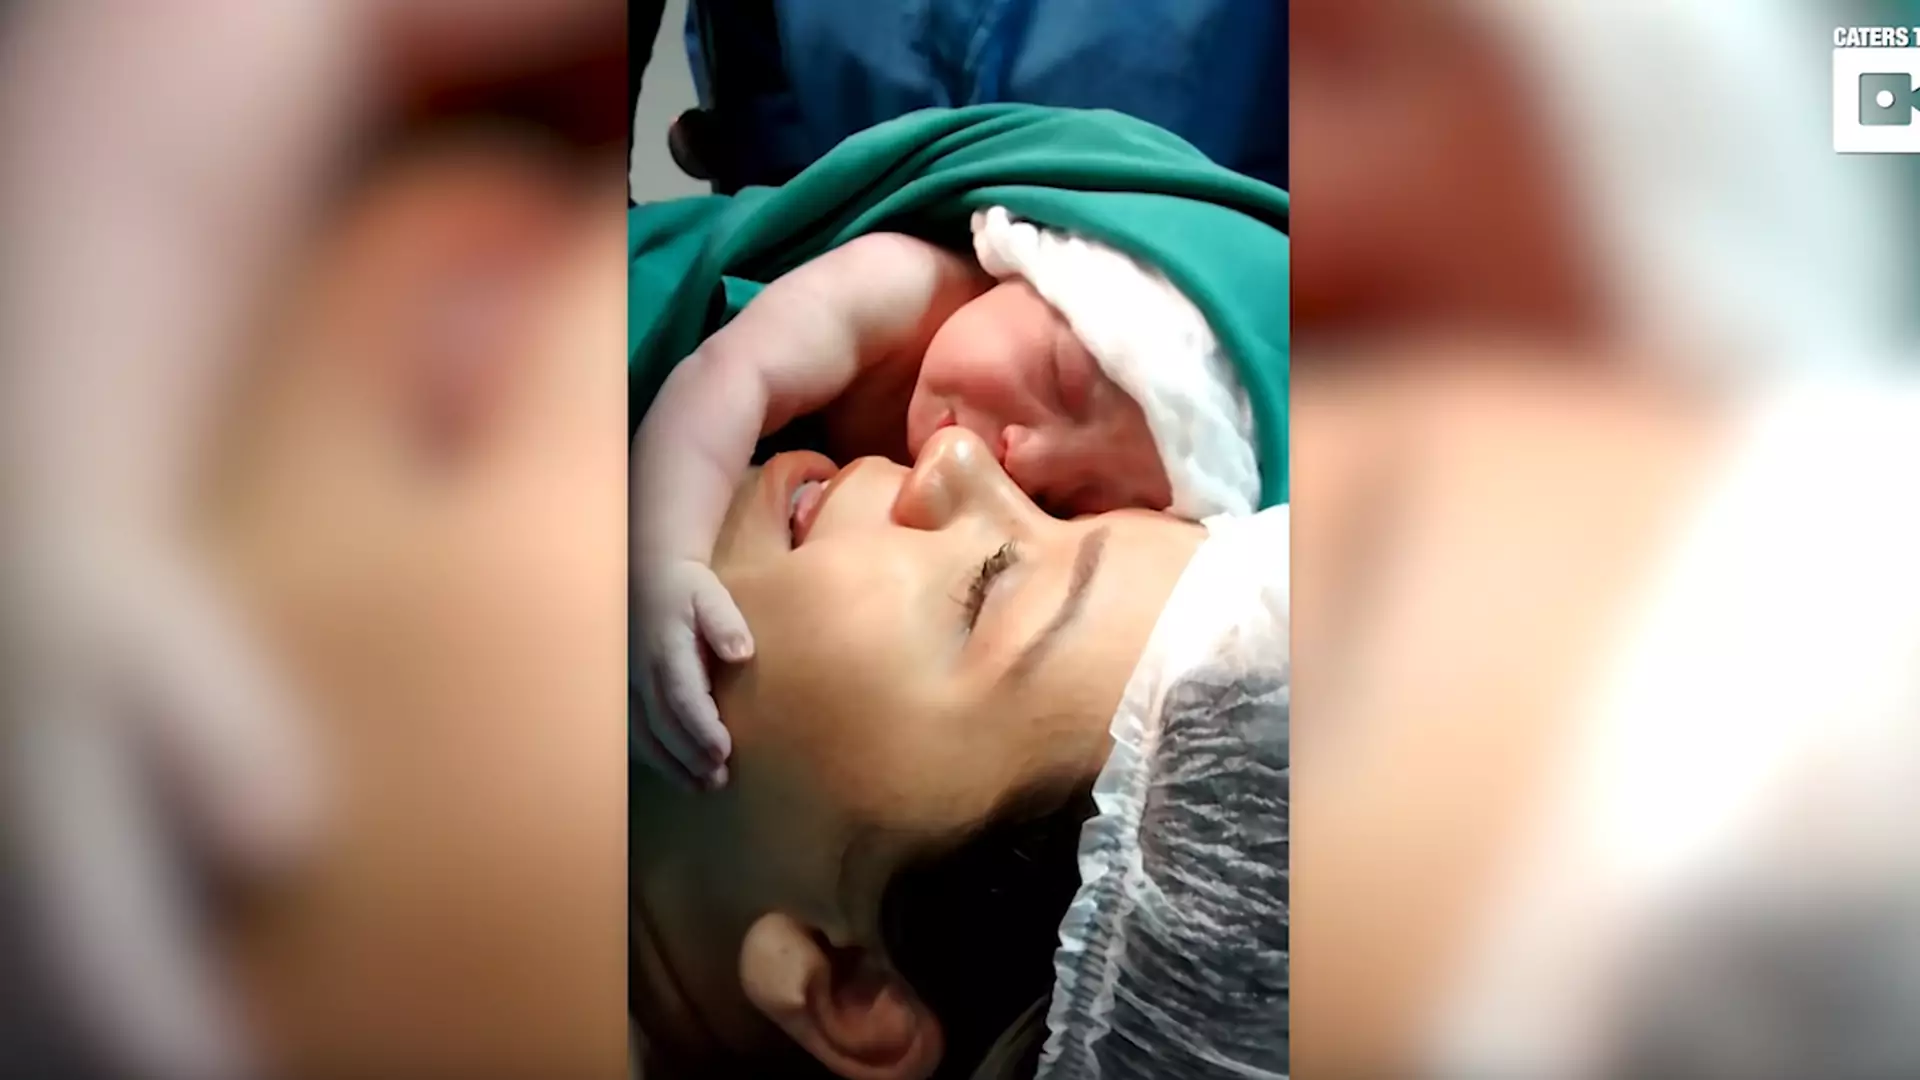 Nowo narodzona dziewczynka całuje i tuli swoją mamę ❤ [wideo]